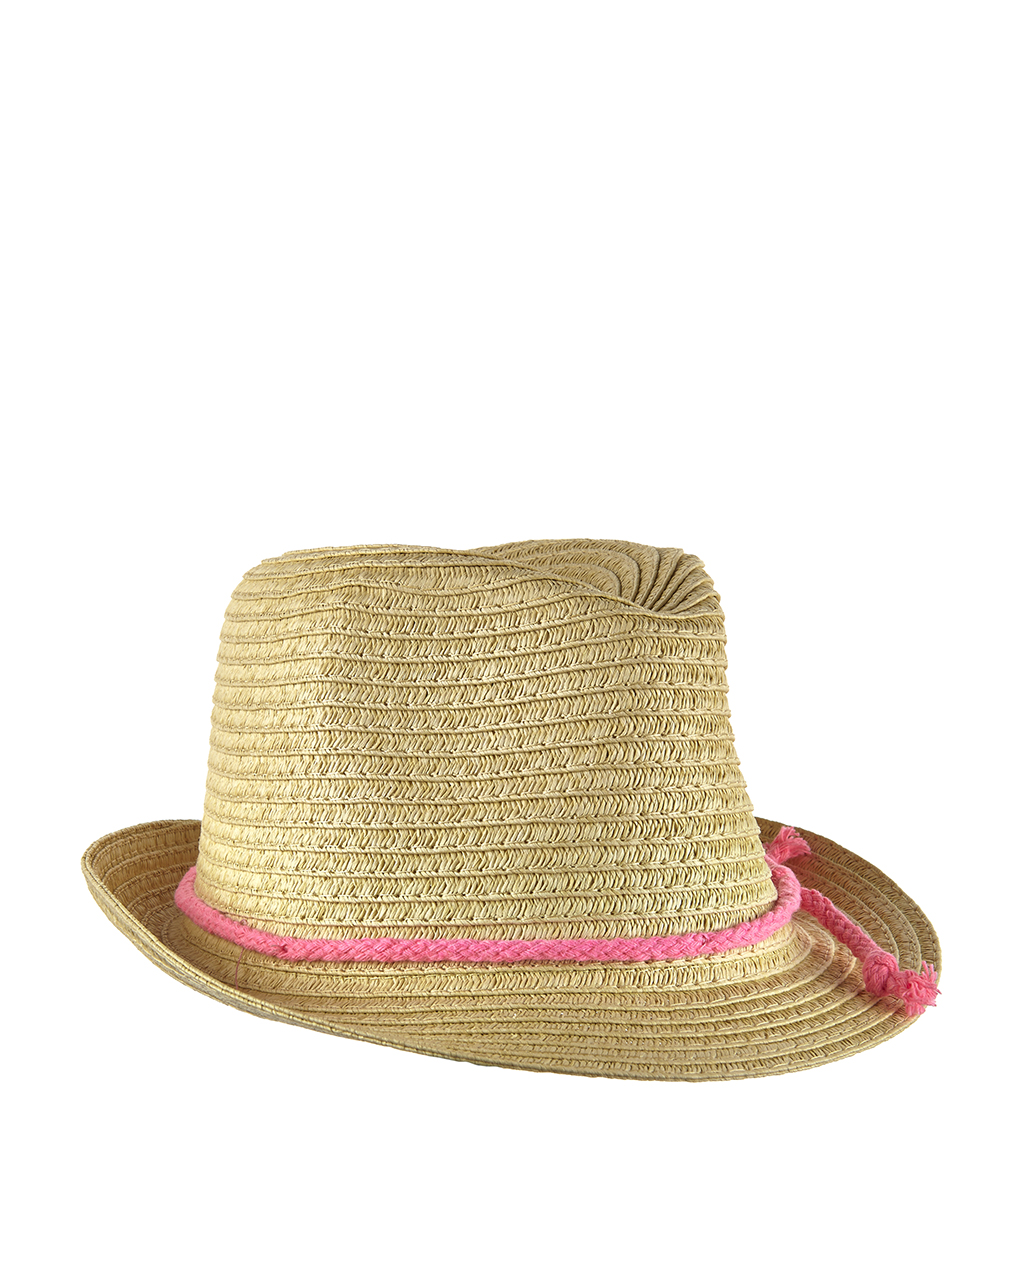 παιδικό καπέλο ψάθινο με ροζ κορδόνι για κορίτσι - Prénatal